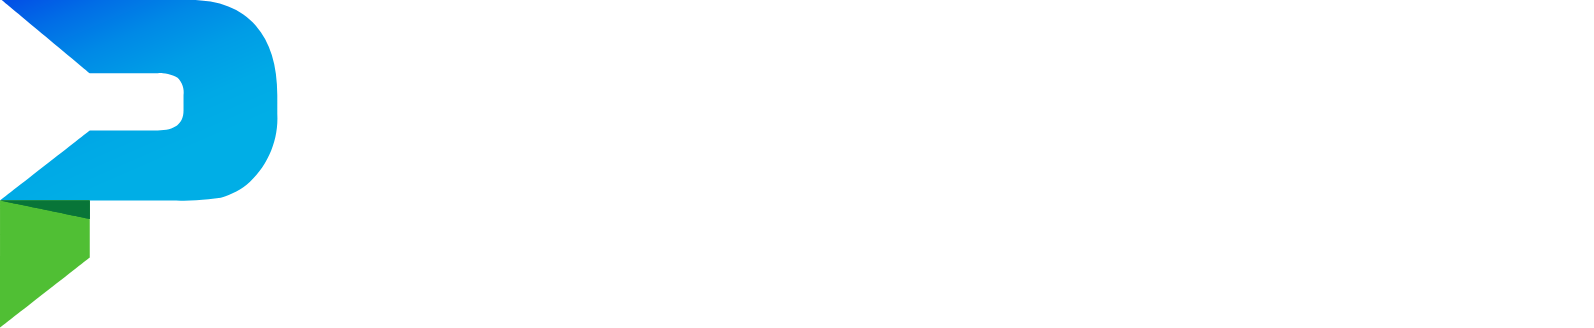 Parsons logo grand pour les fonds sombres (PNG transparent)